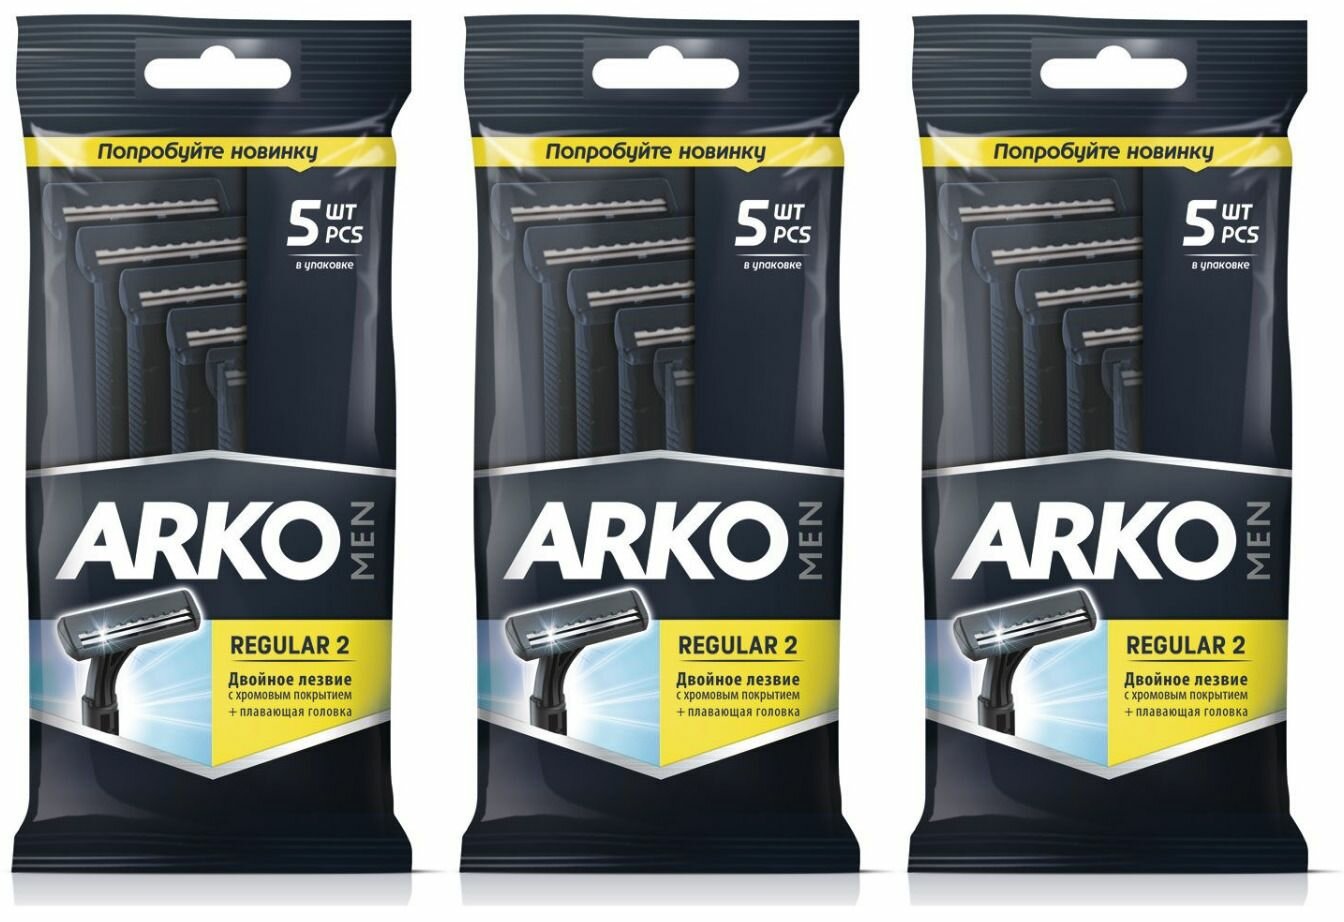 Arko Men Бритвенный станок Regular 2 Black, 5 шт/уп, 3 шт